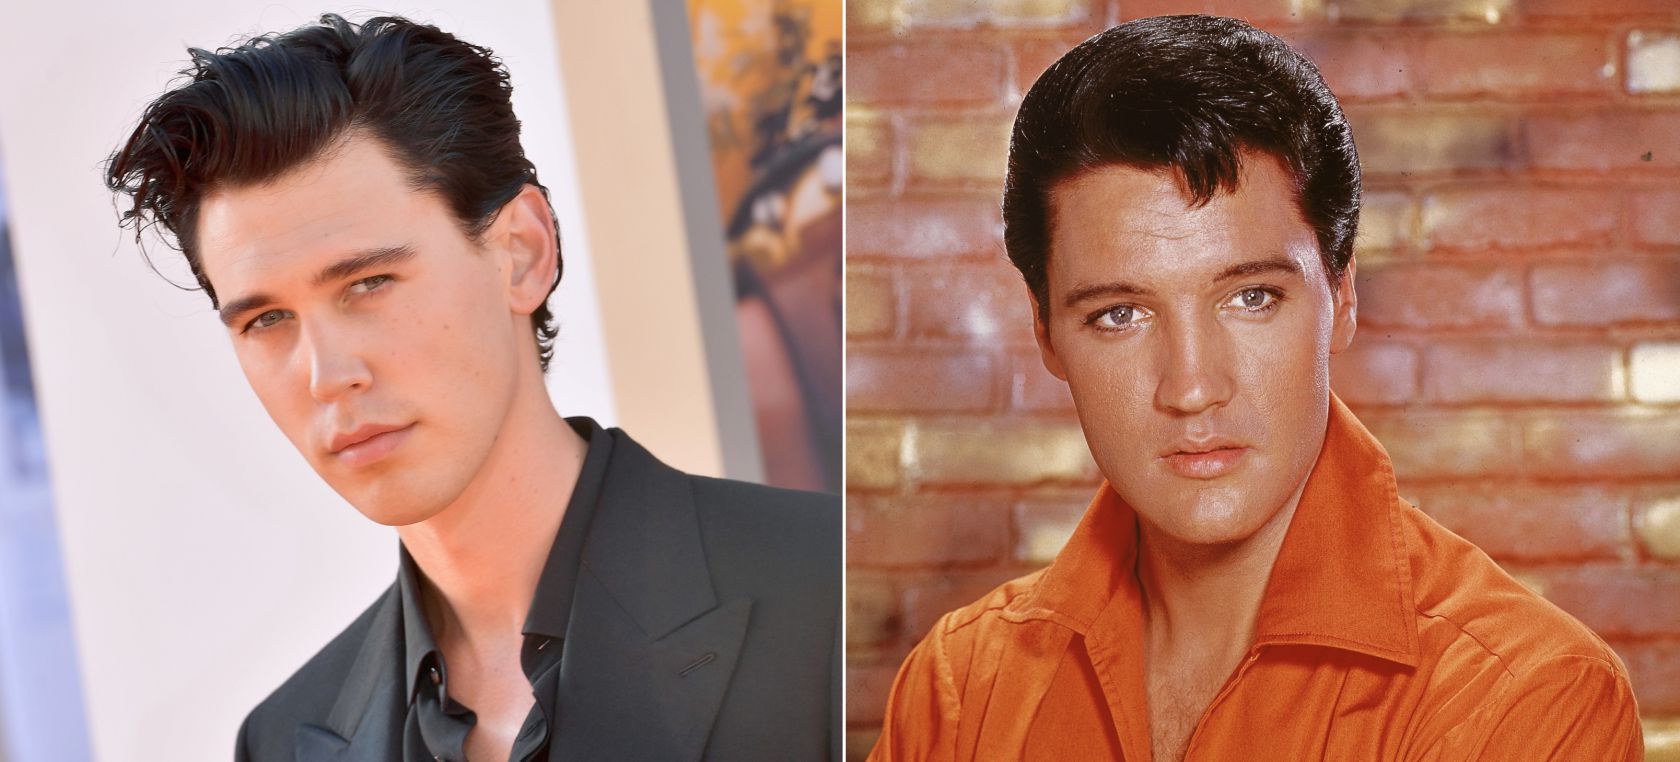 La increíble transformación de Austin Butler en Elvis Presley en el tráiler de su biopic